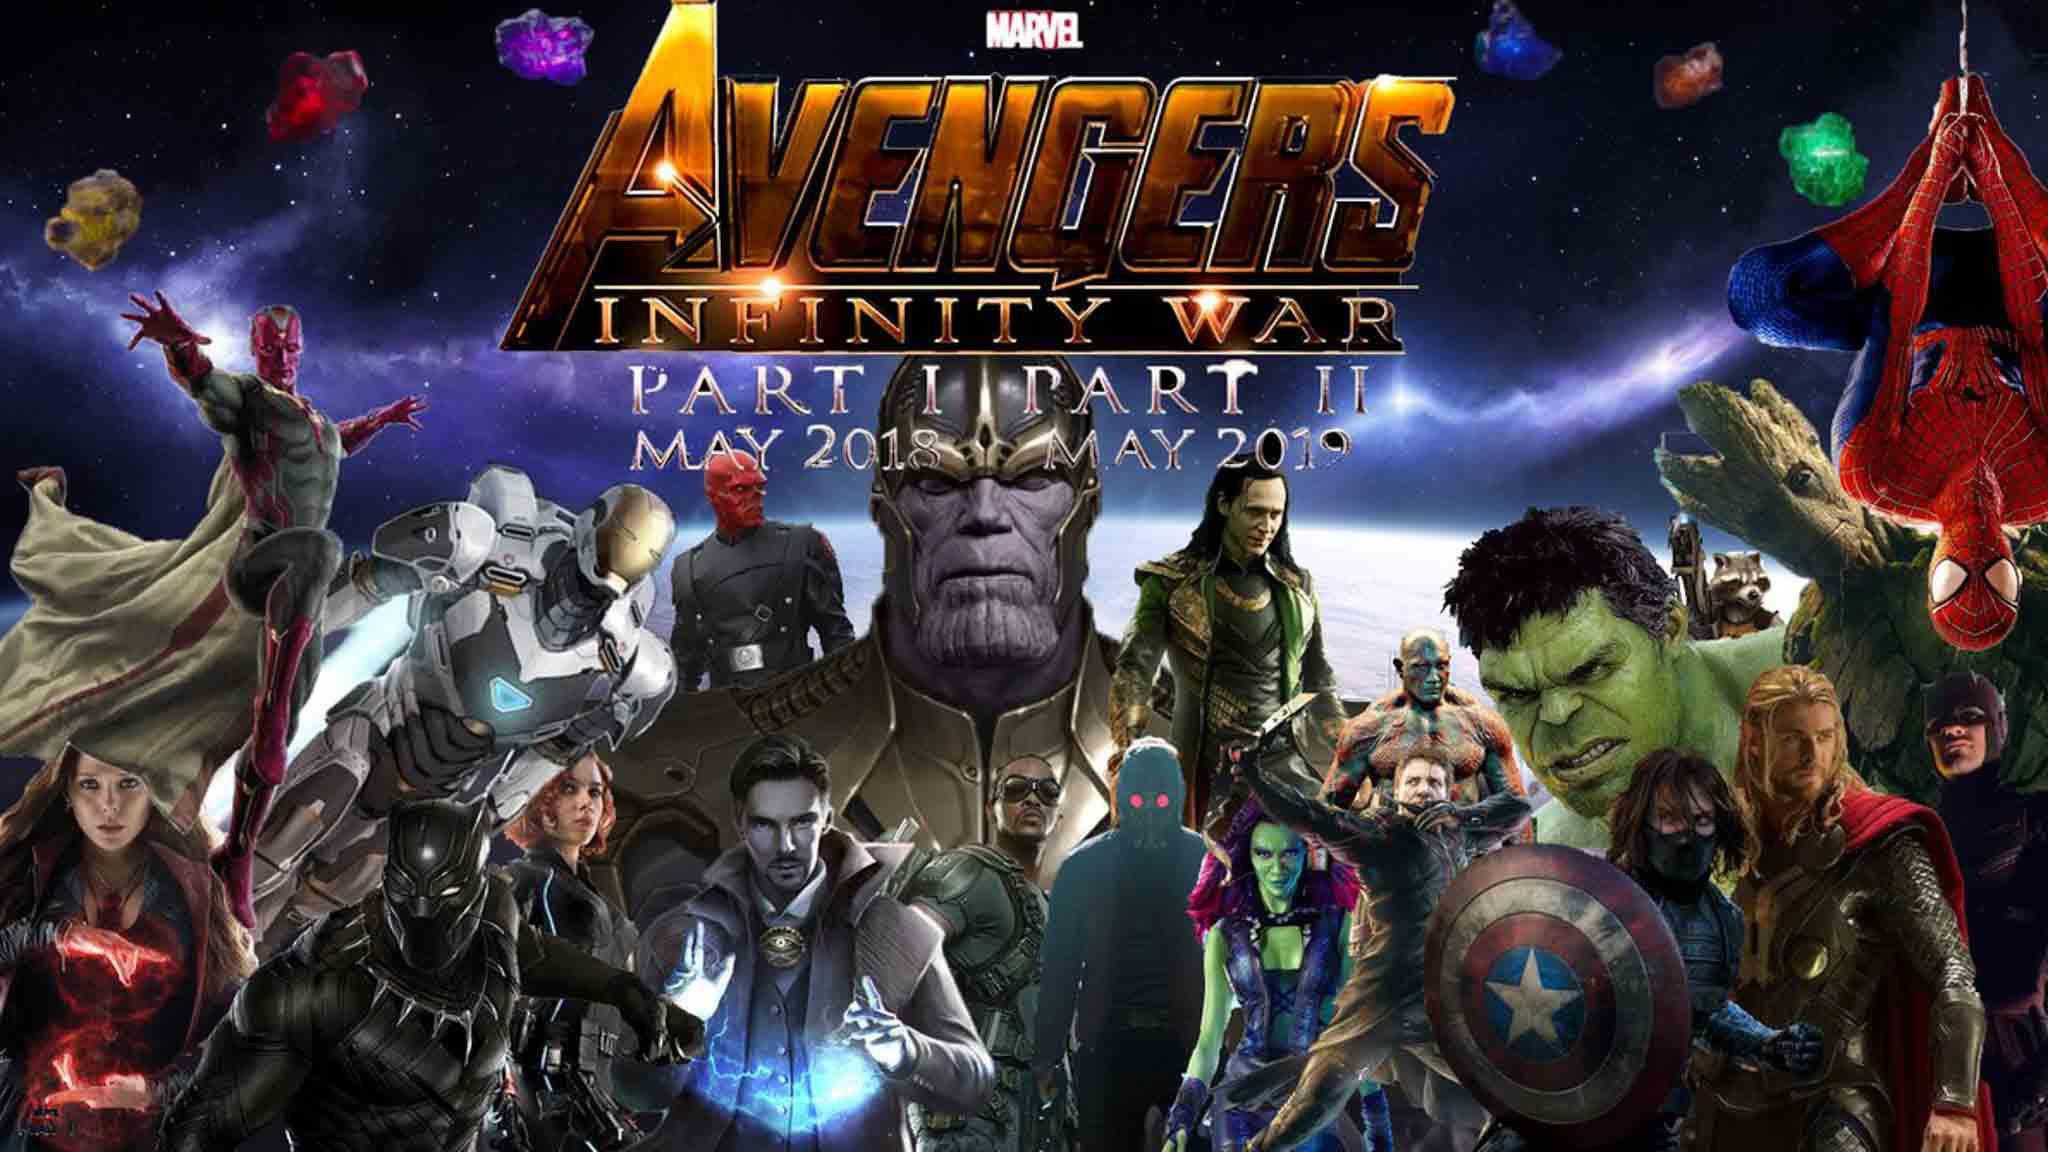 2048x1152 Avengers: Infinity War Wallpaper 7 - 2048 X 1152